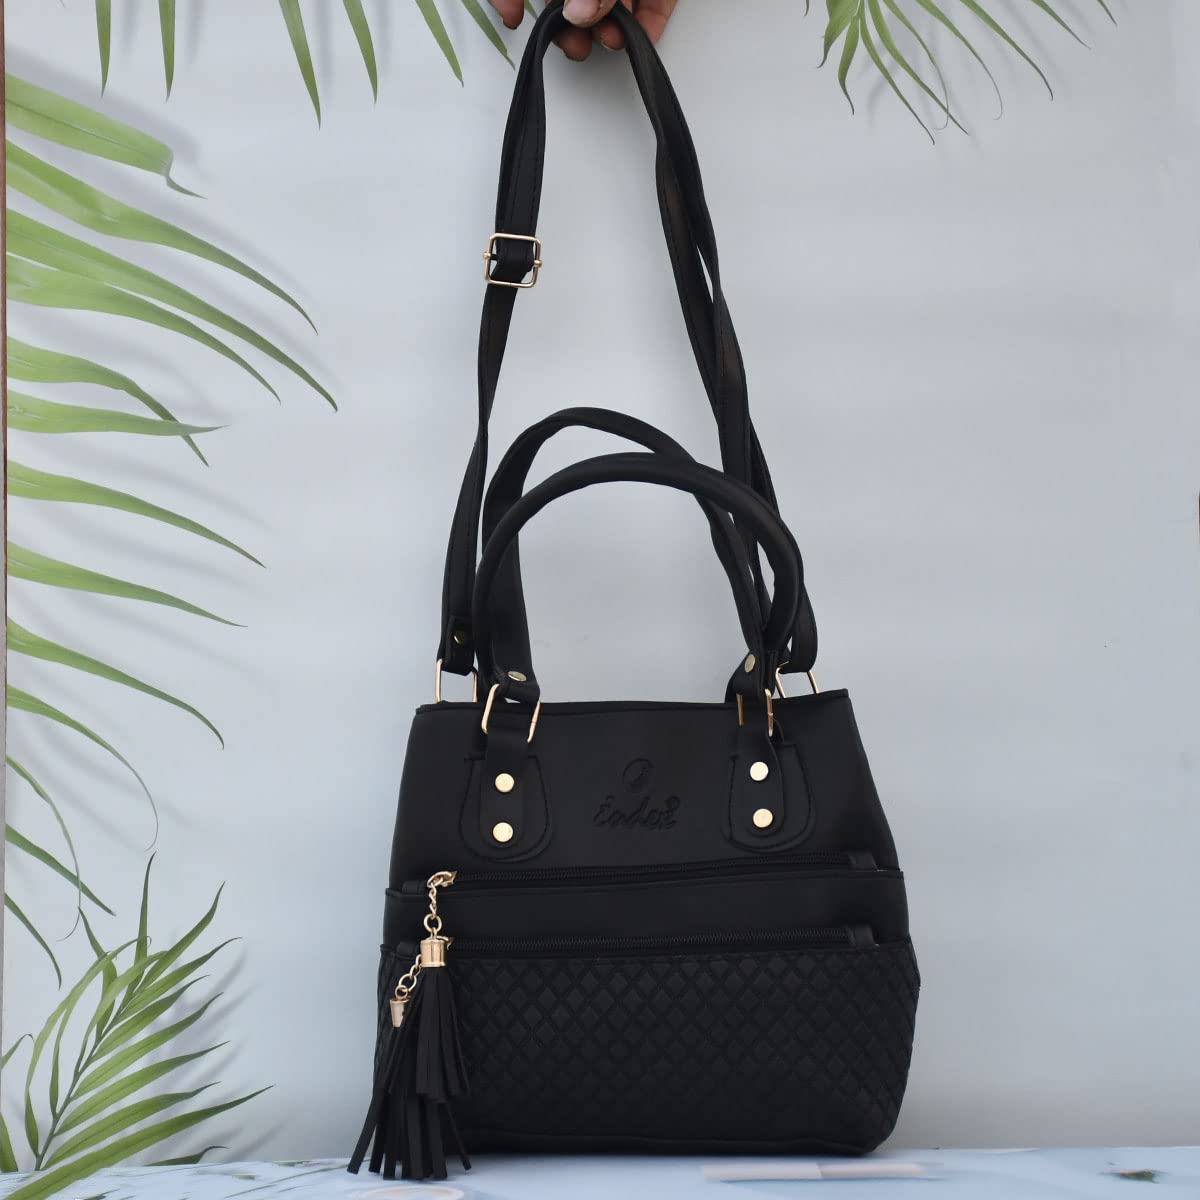 Handmade Leather Tote Bag Handbag Purse Shoulder Office Laptop Bag for  Women1 | eBay